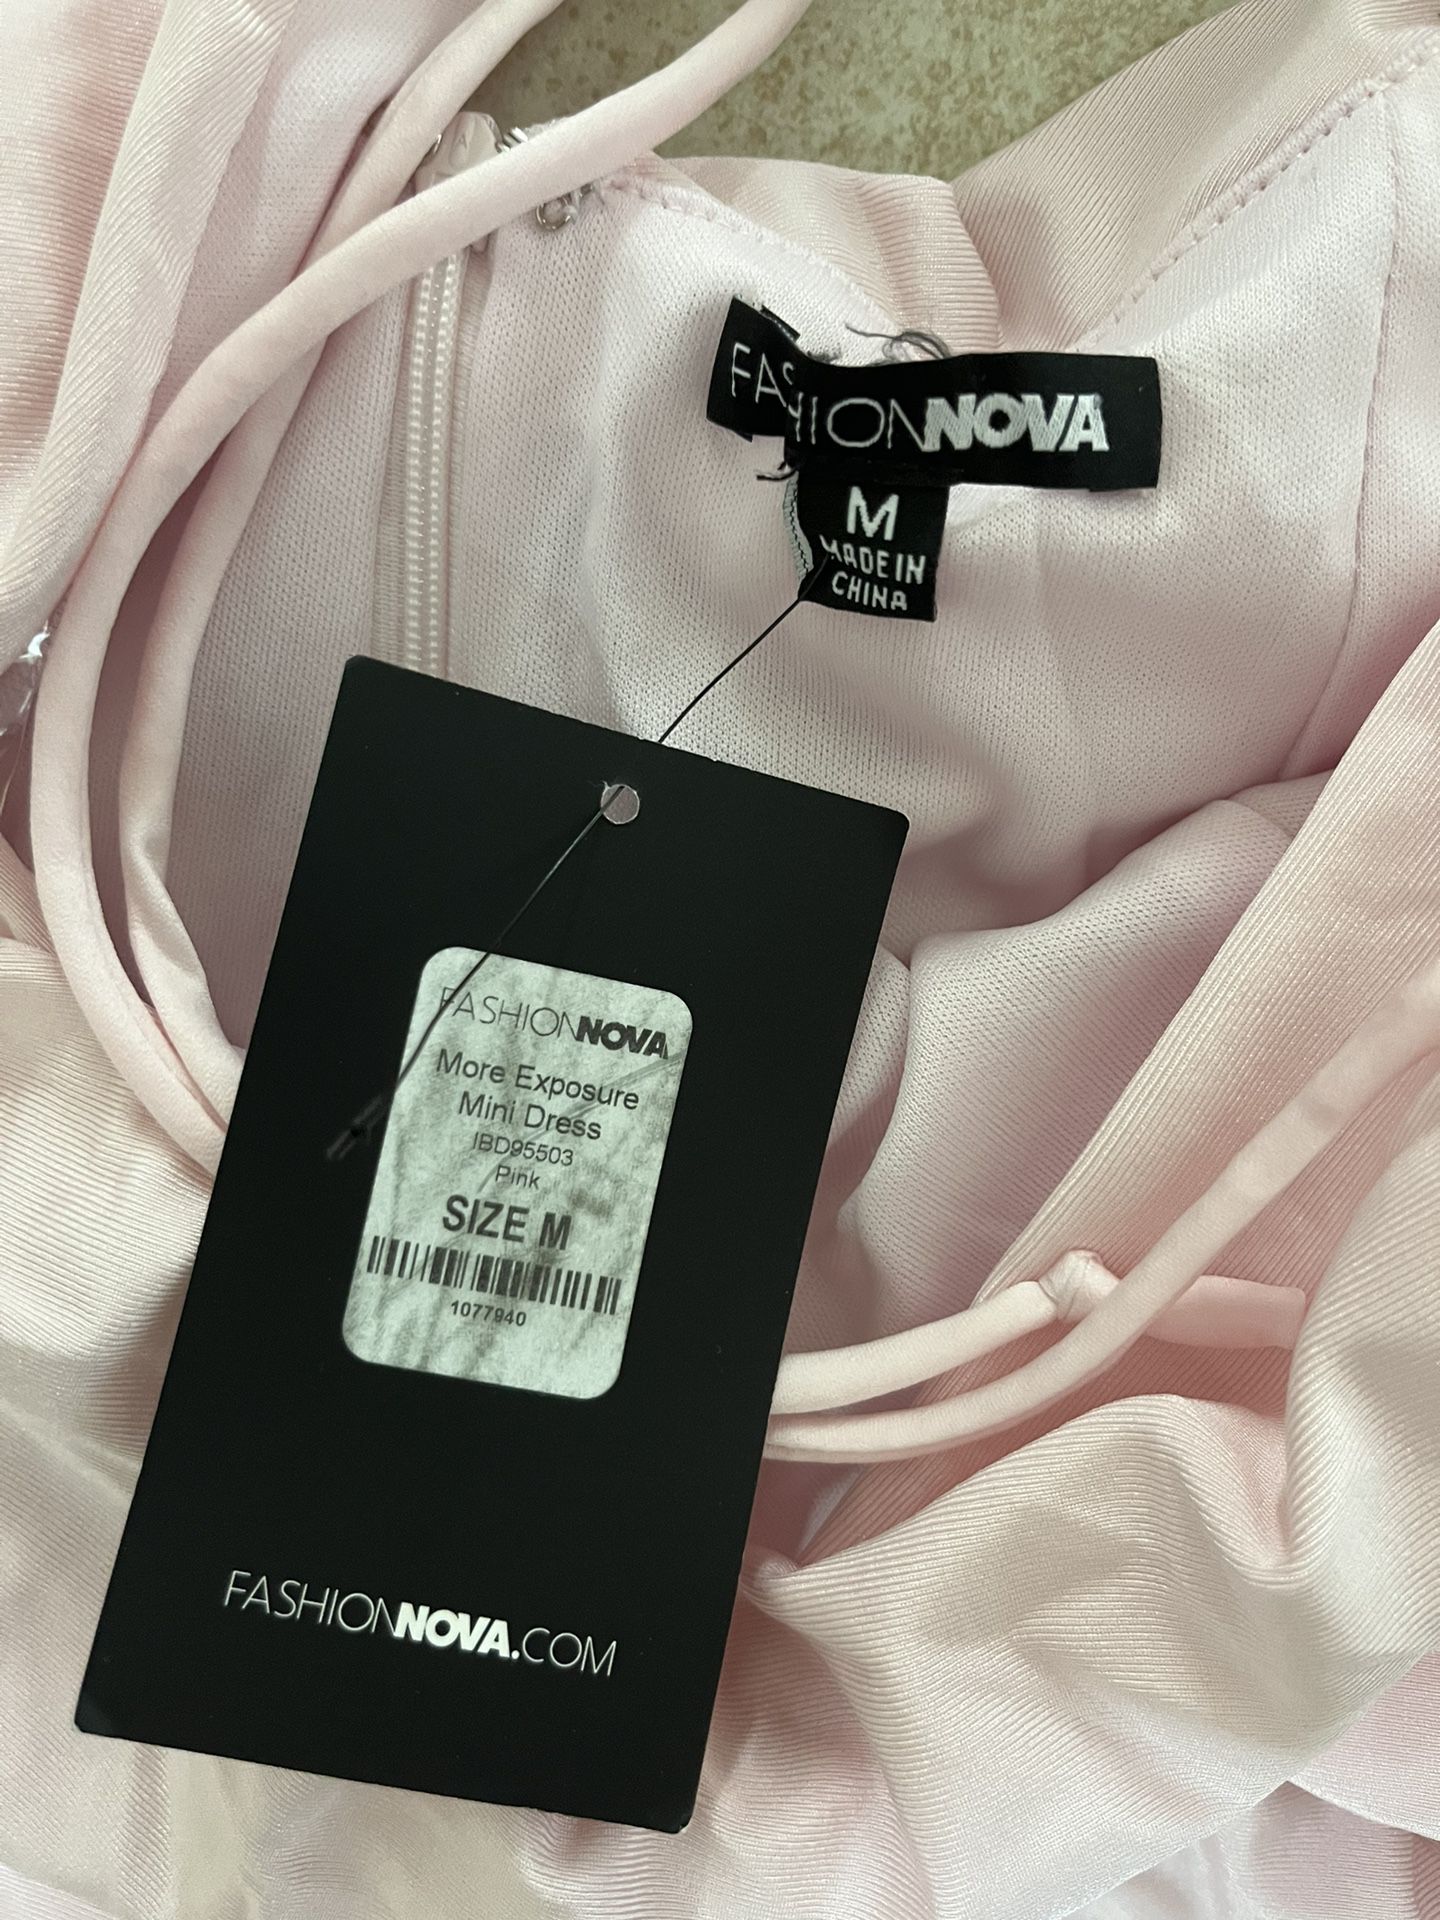 Fashion Nova More Exposure Mini Dress NWT Size M